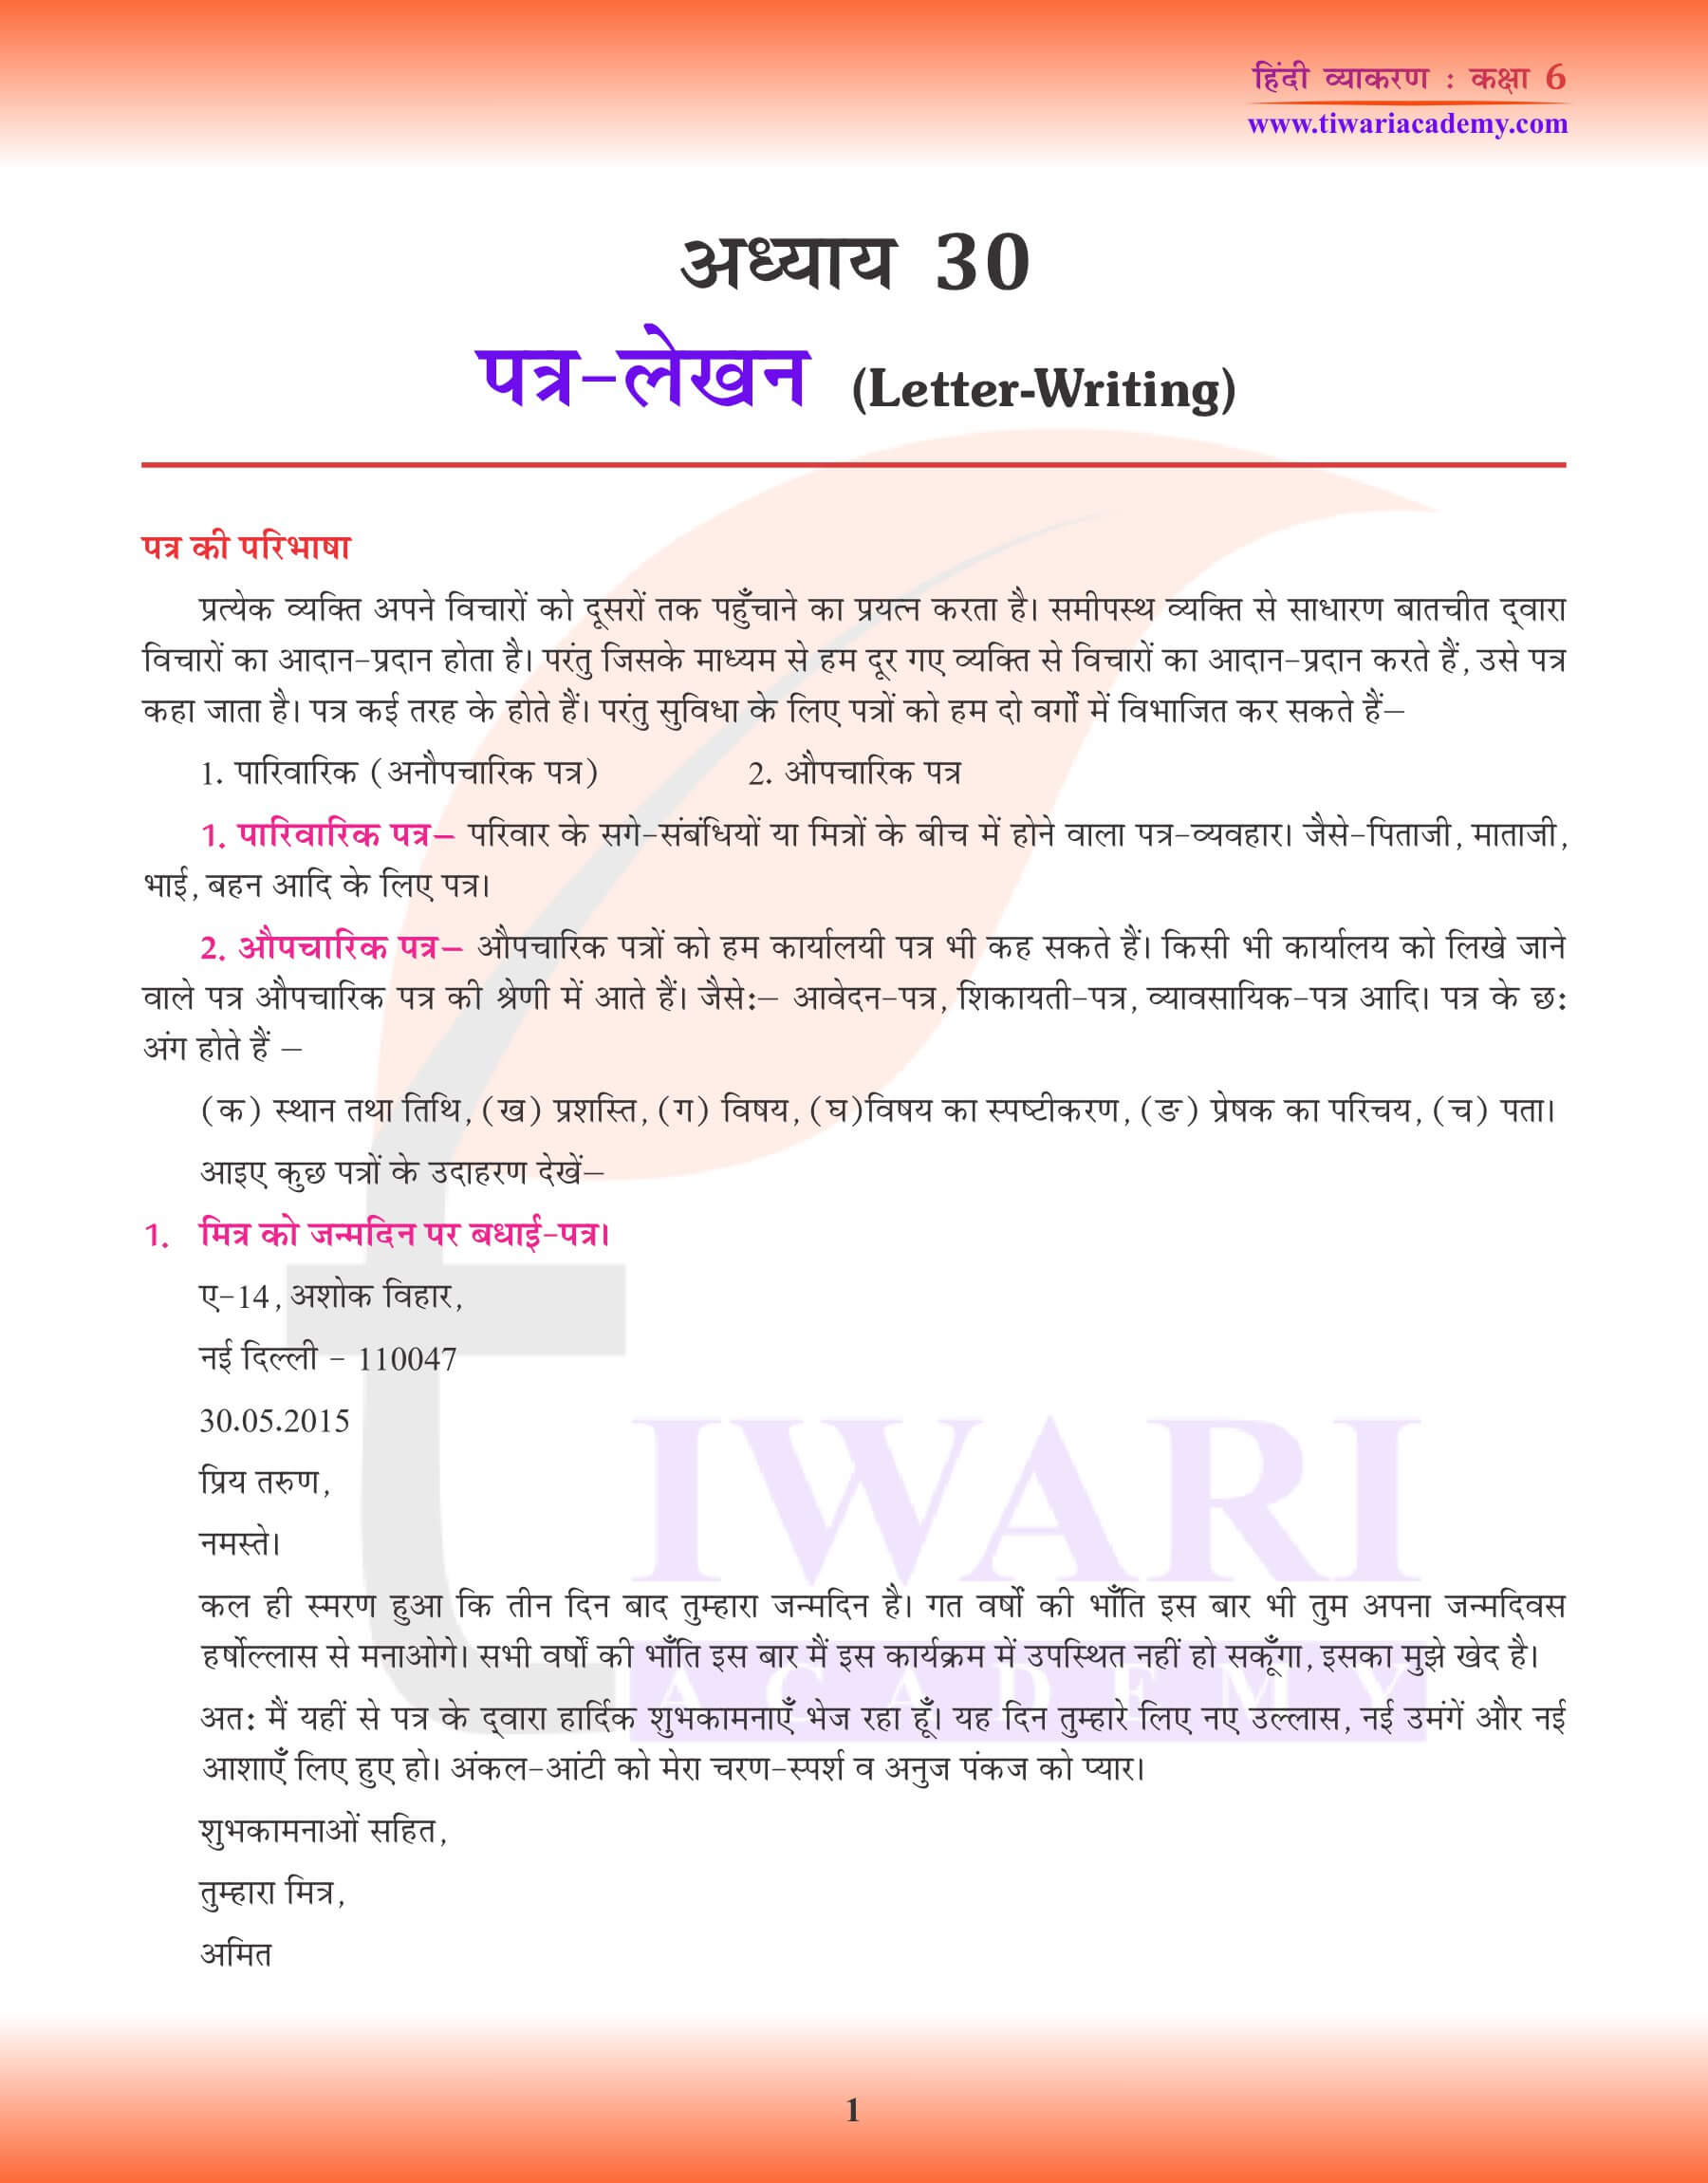 कक्षा 6 हिंदी व्याकरण पत्र लेखन